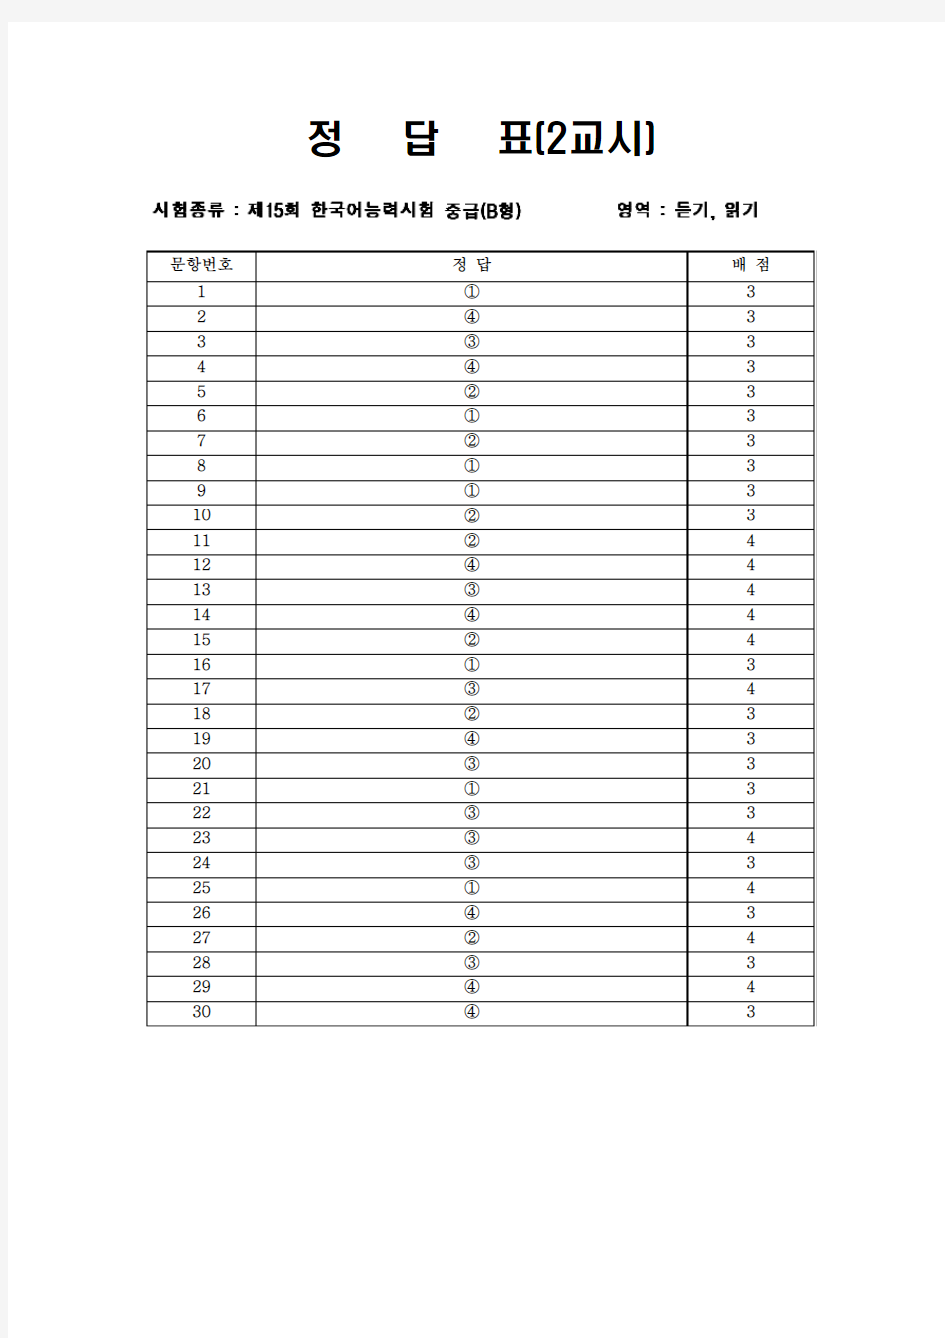 第15届韩国语等级考试真题-中级卷2答案